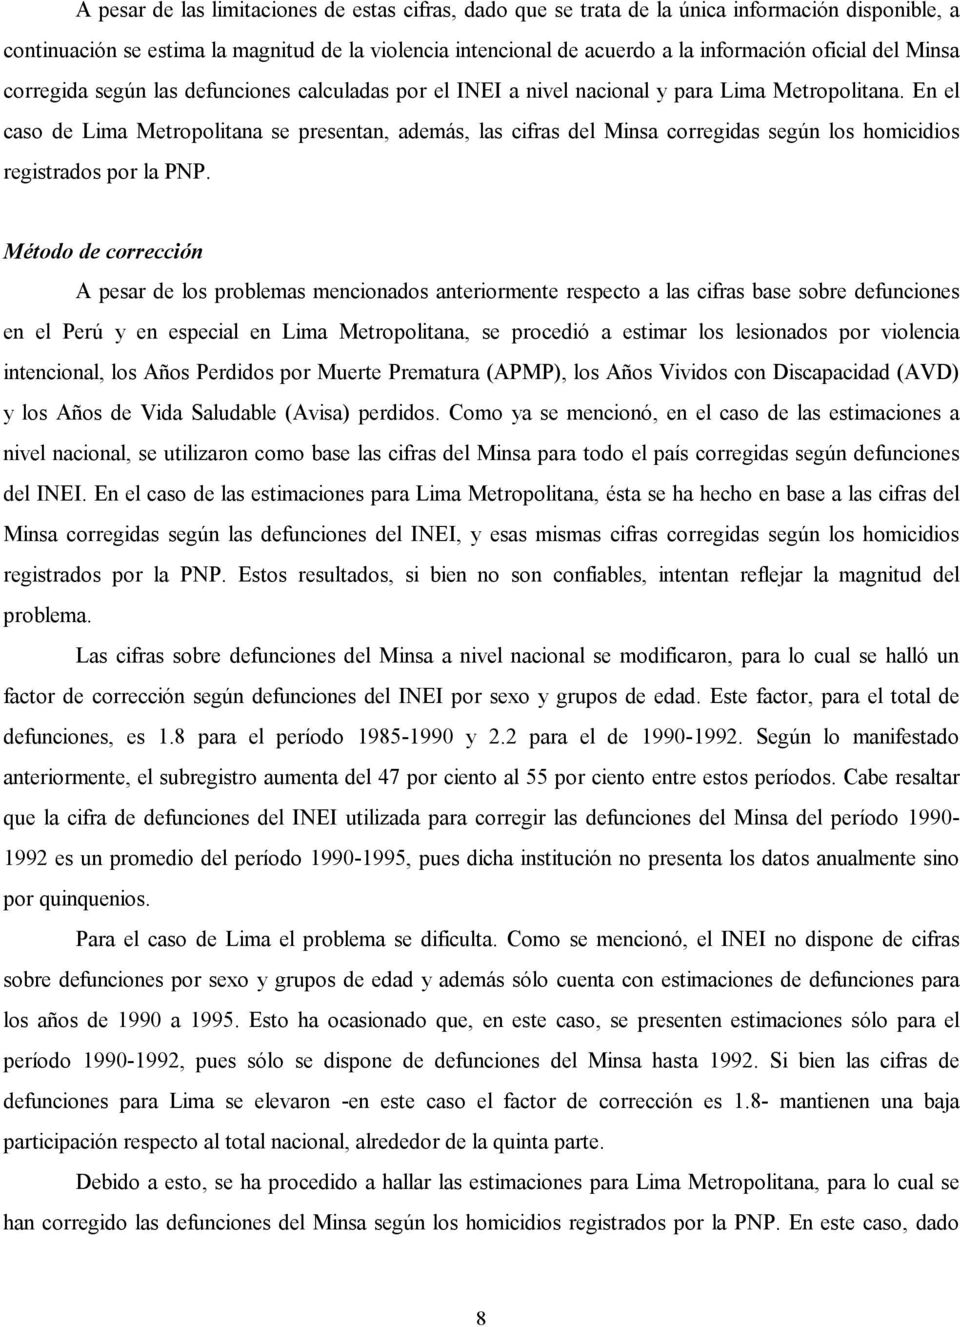 En el caso de Lima Metropolitana se presentan, además, las cifras del Minsa corregidas según los homicidios registrados por la PNP.